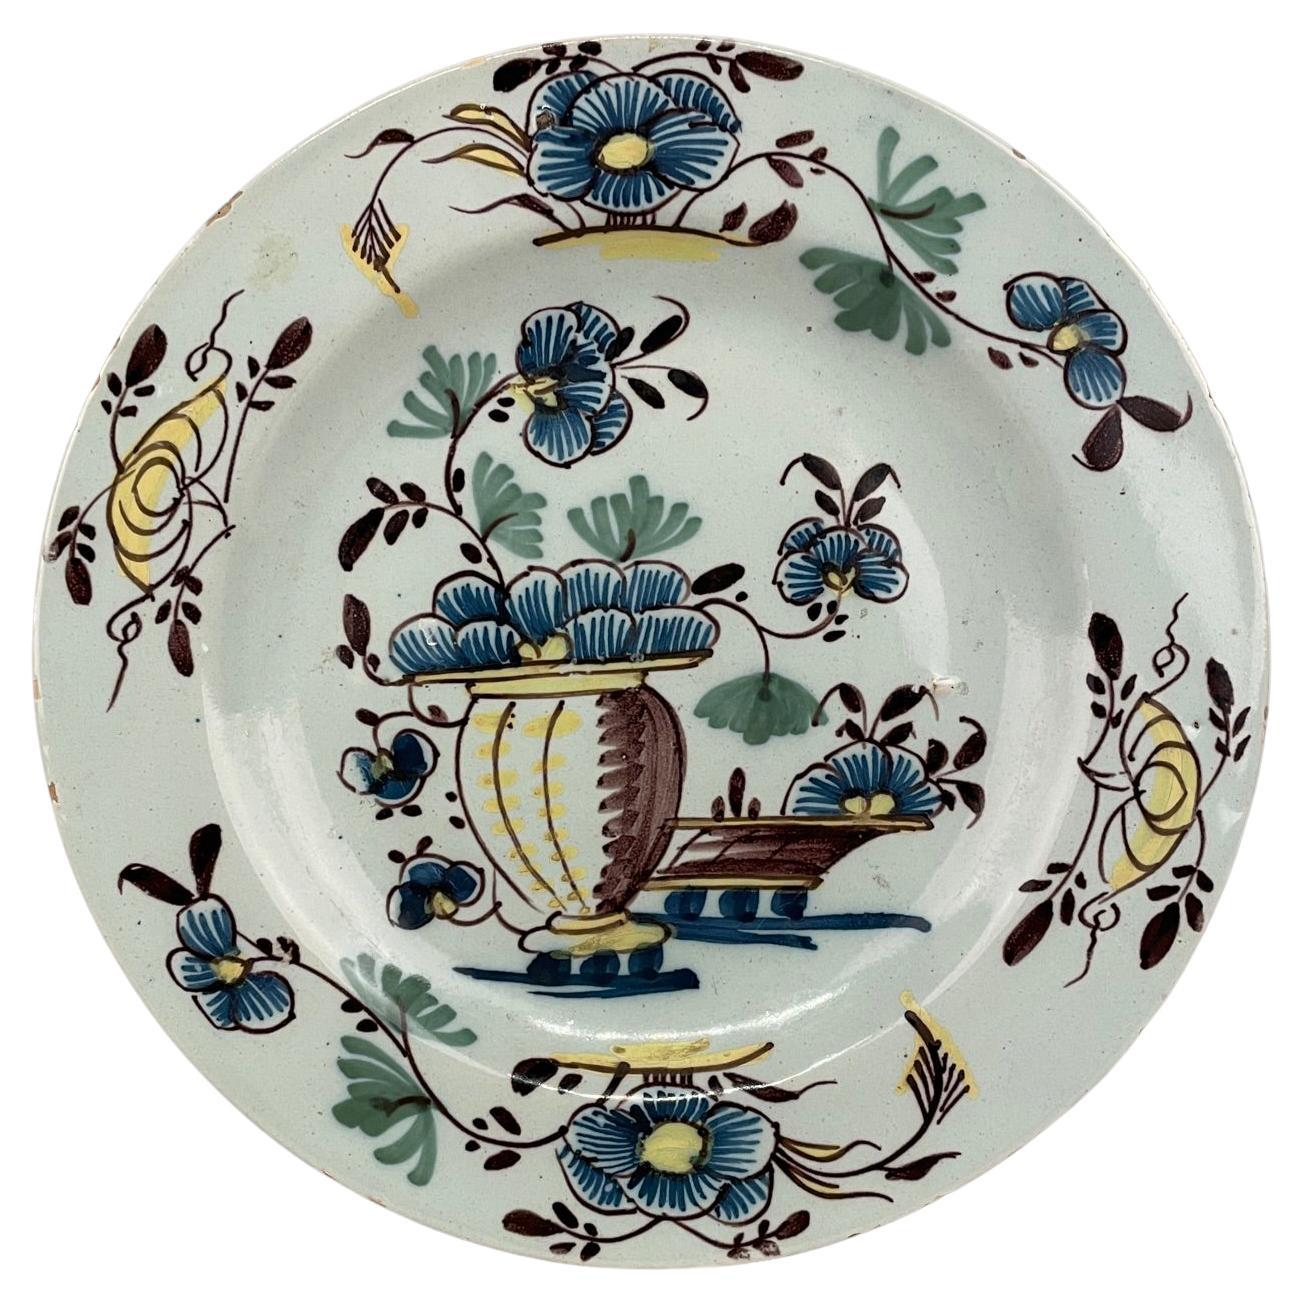 Assiette polychrome anglaise du 18ème siècle en faïence de Delft émaillée